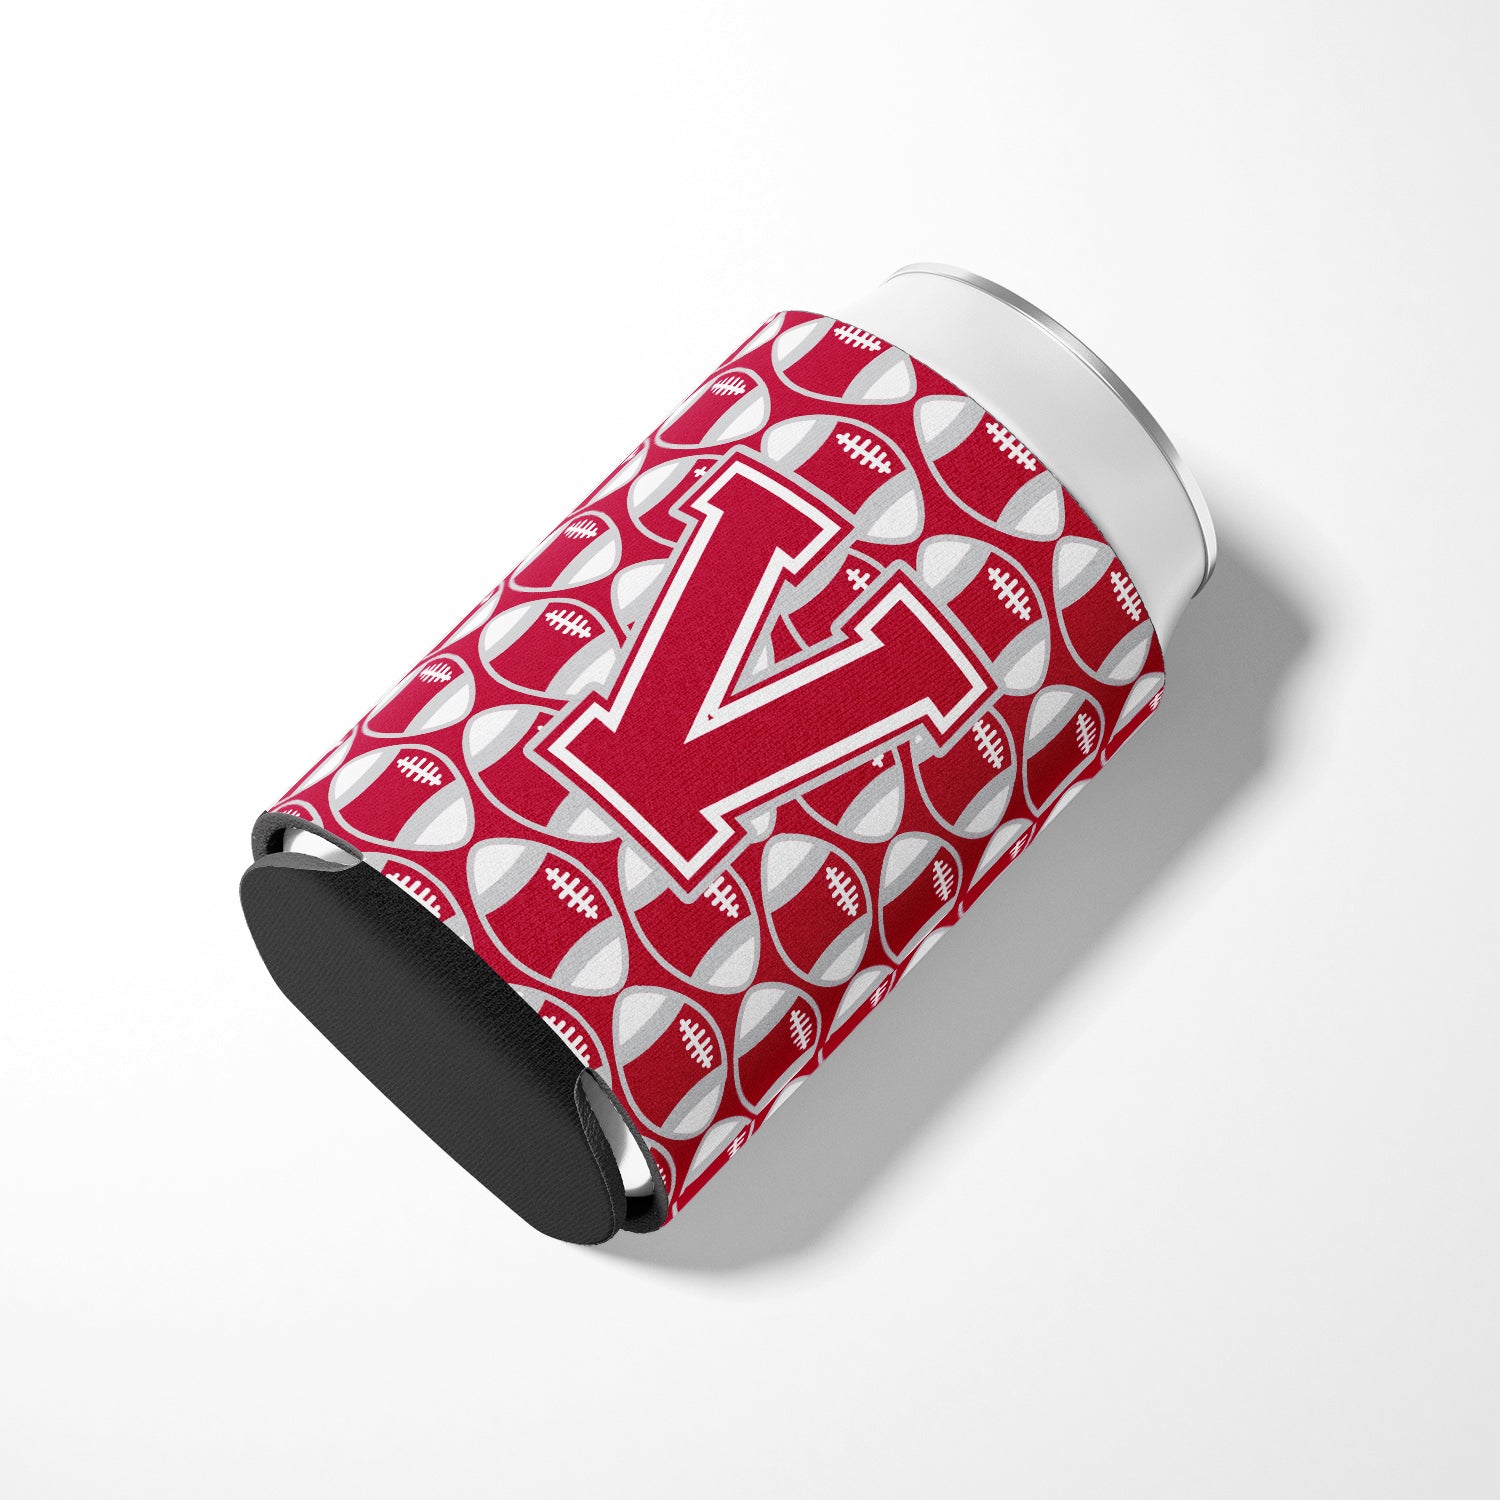 Letter V Football Crimson, grey and white Can or Bottle Hugger CJ1065-VCC.